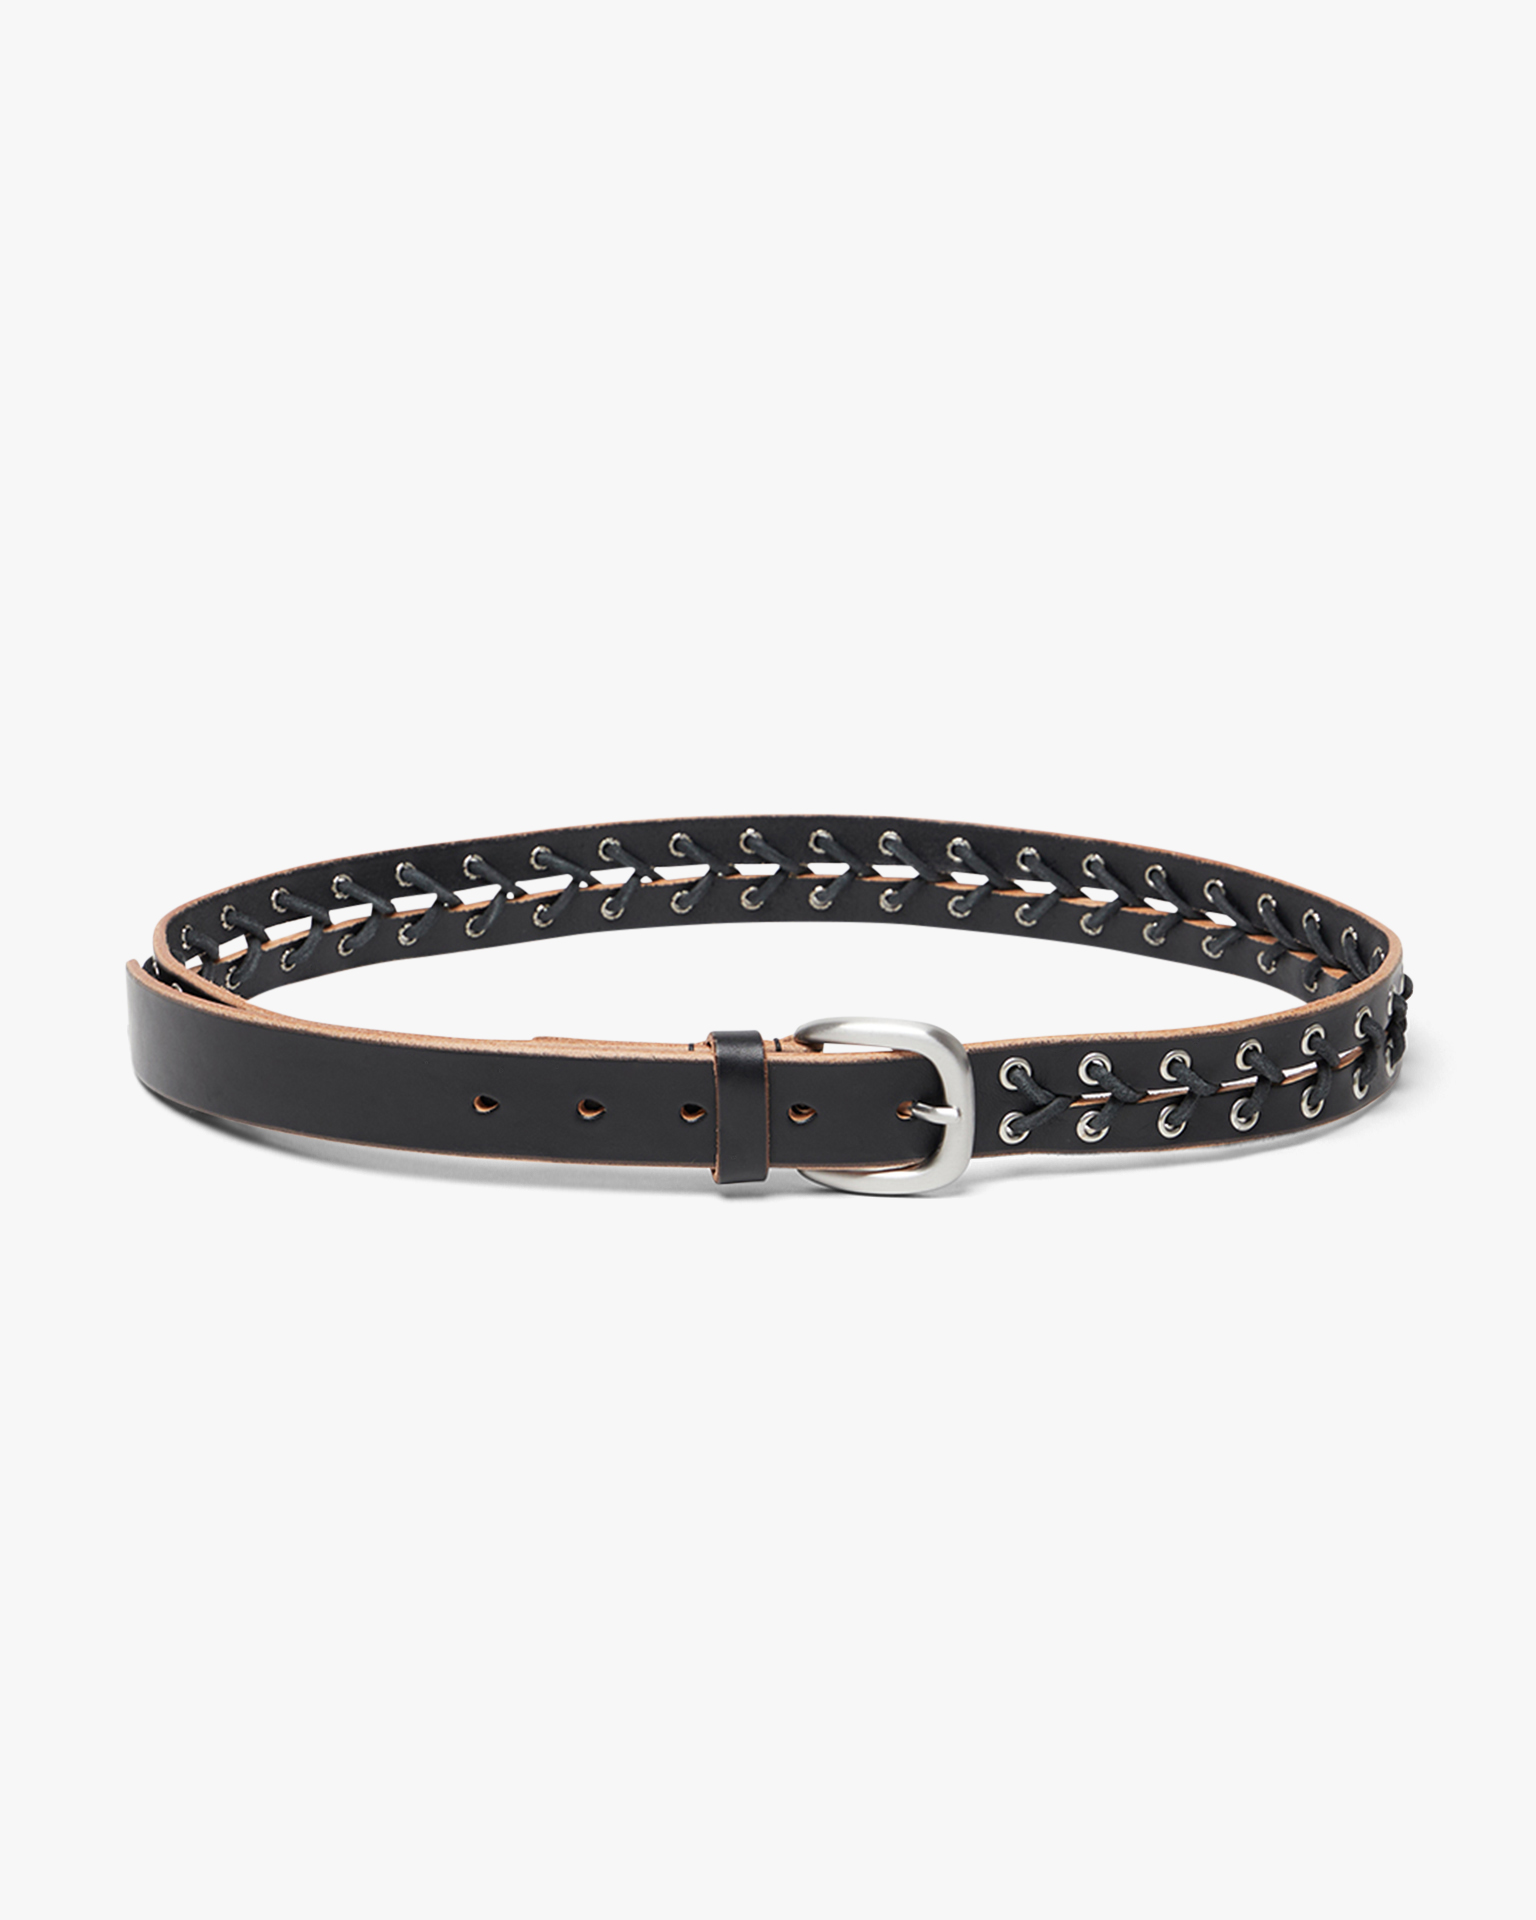 3cm Corset Belt Black Leather | PRGRSS Store